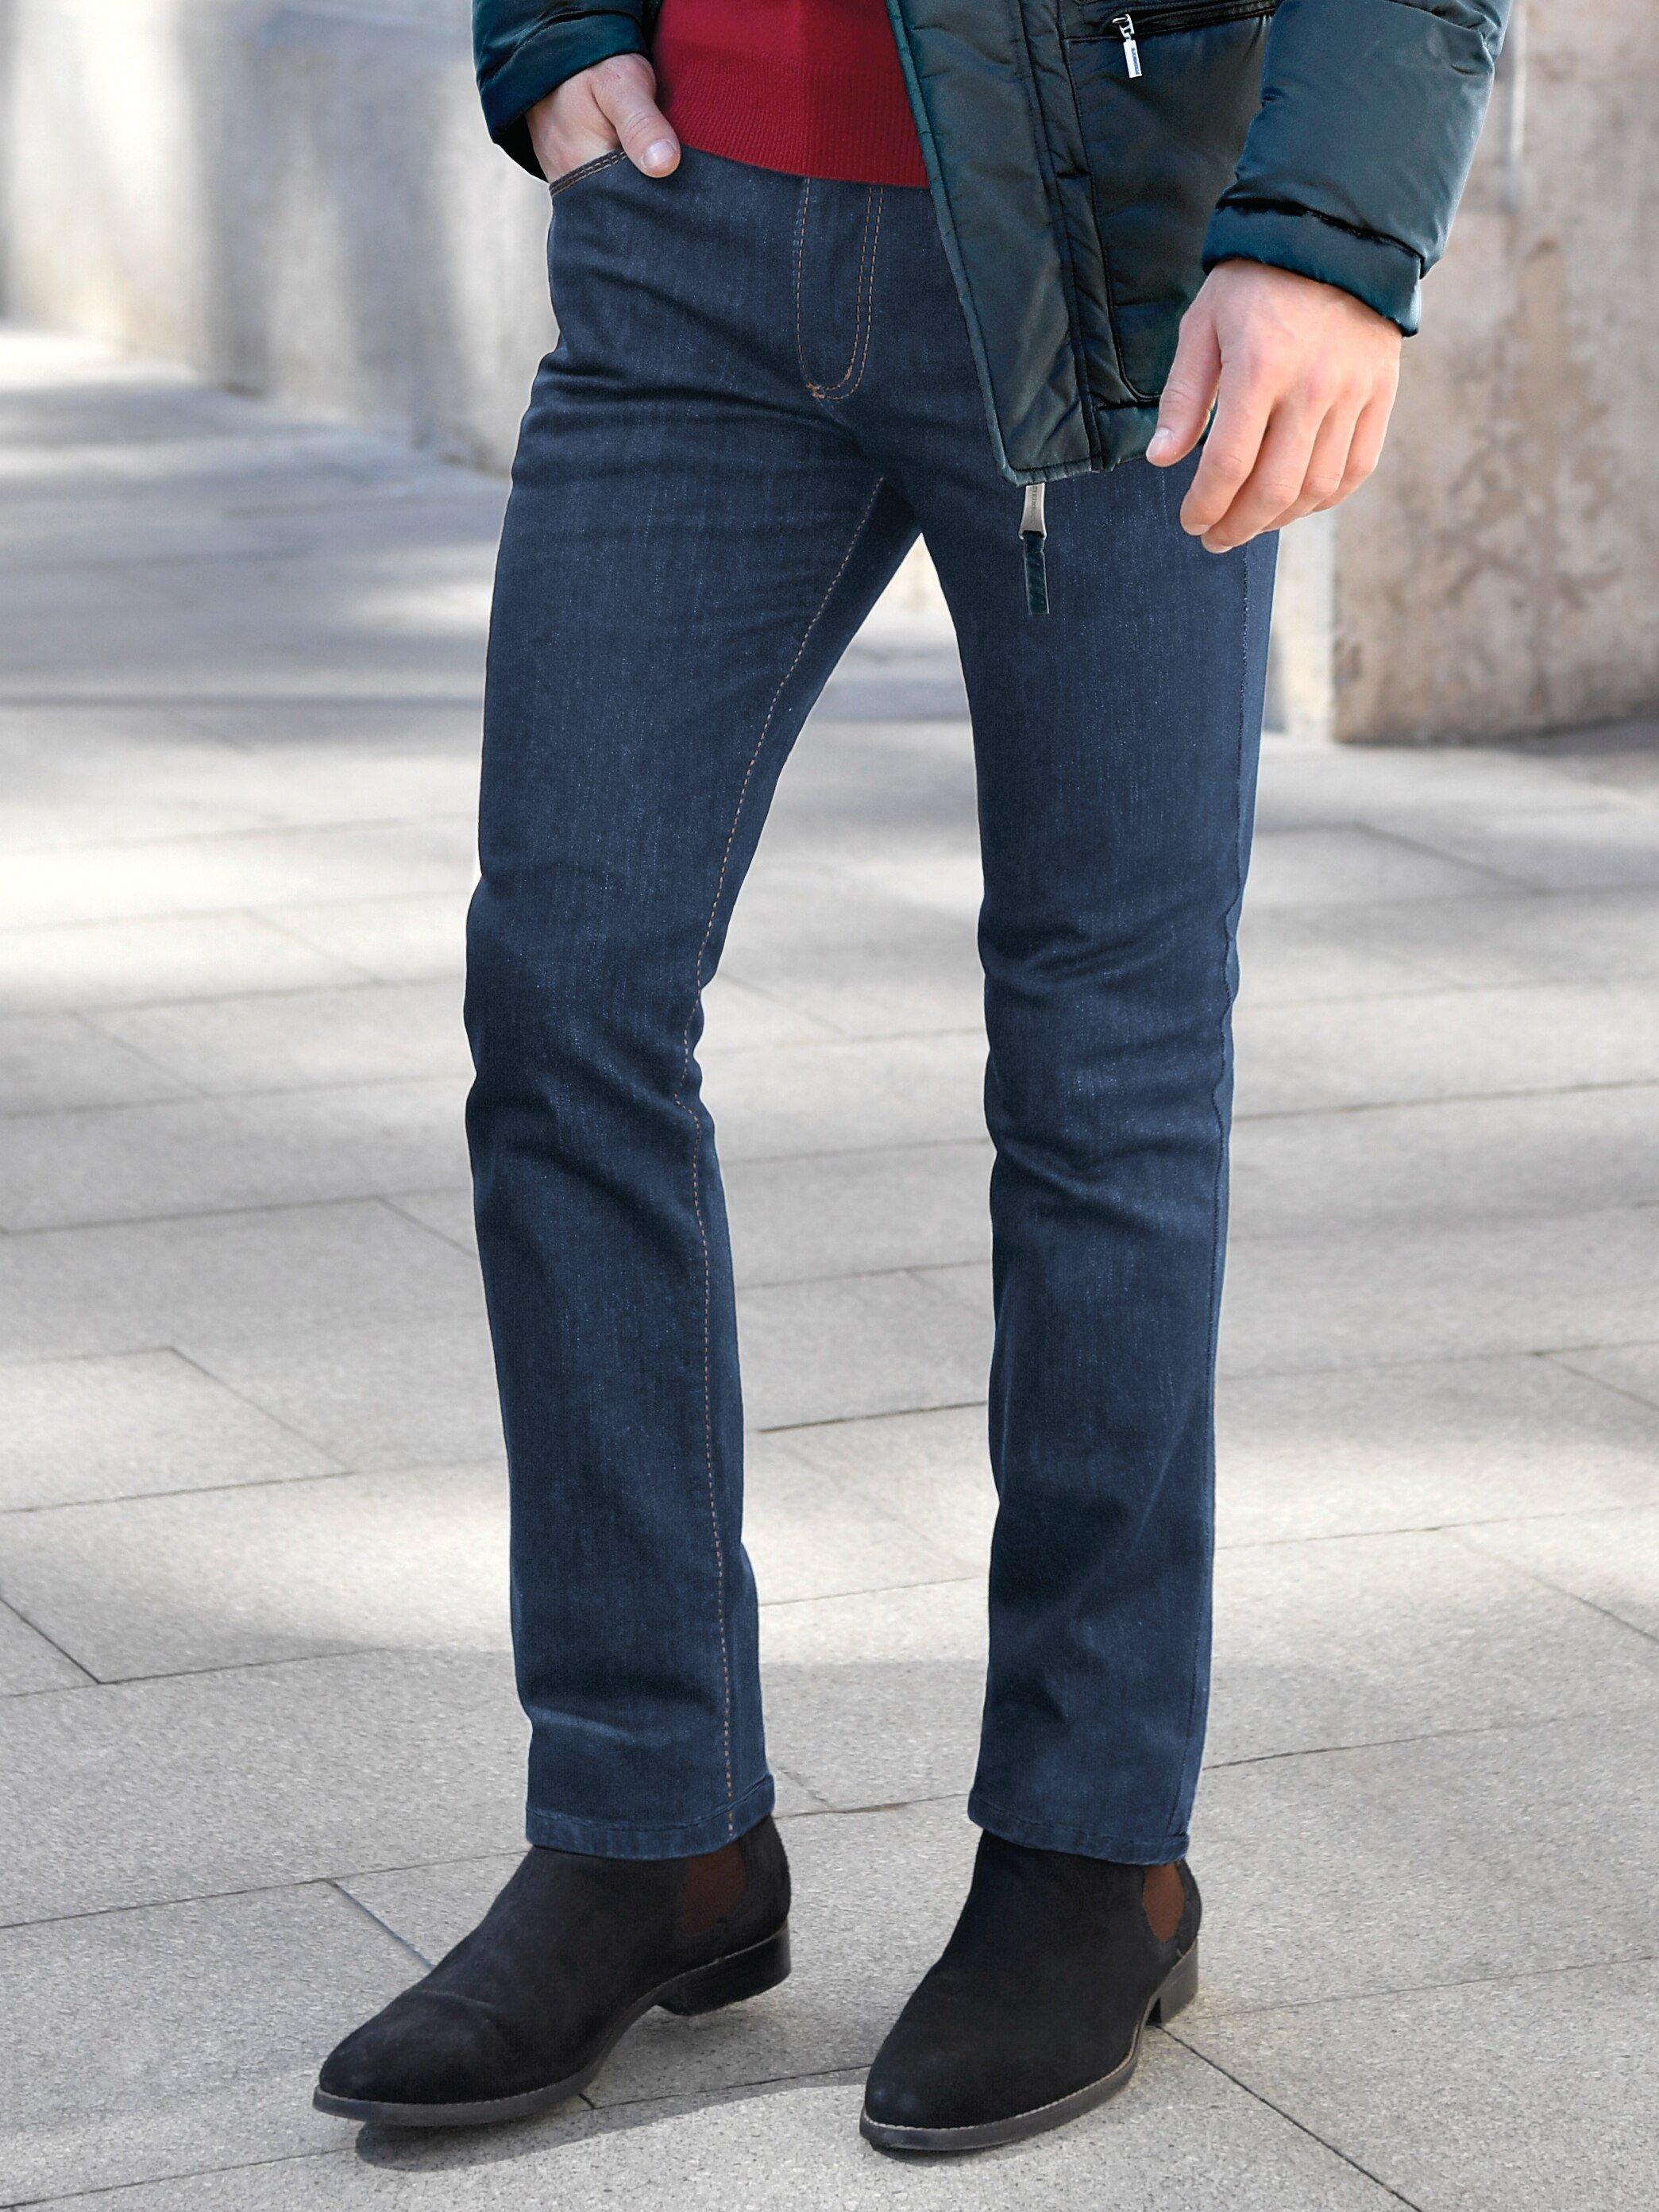 JOKER - Jeans Modell FREDDY Inch 30